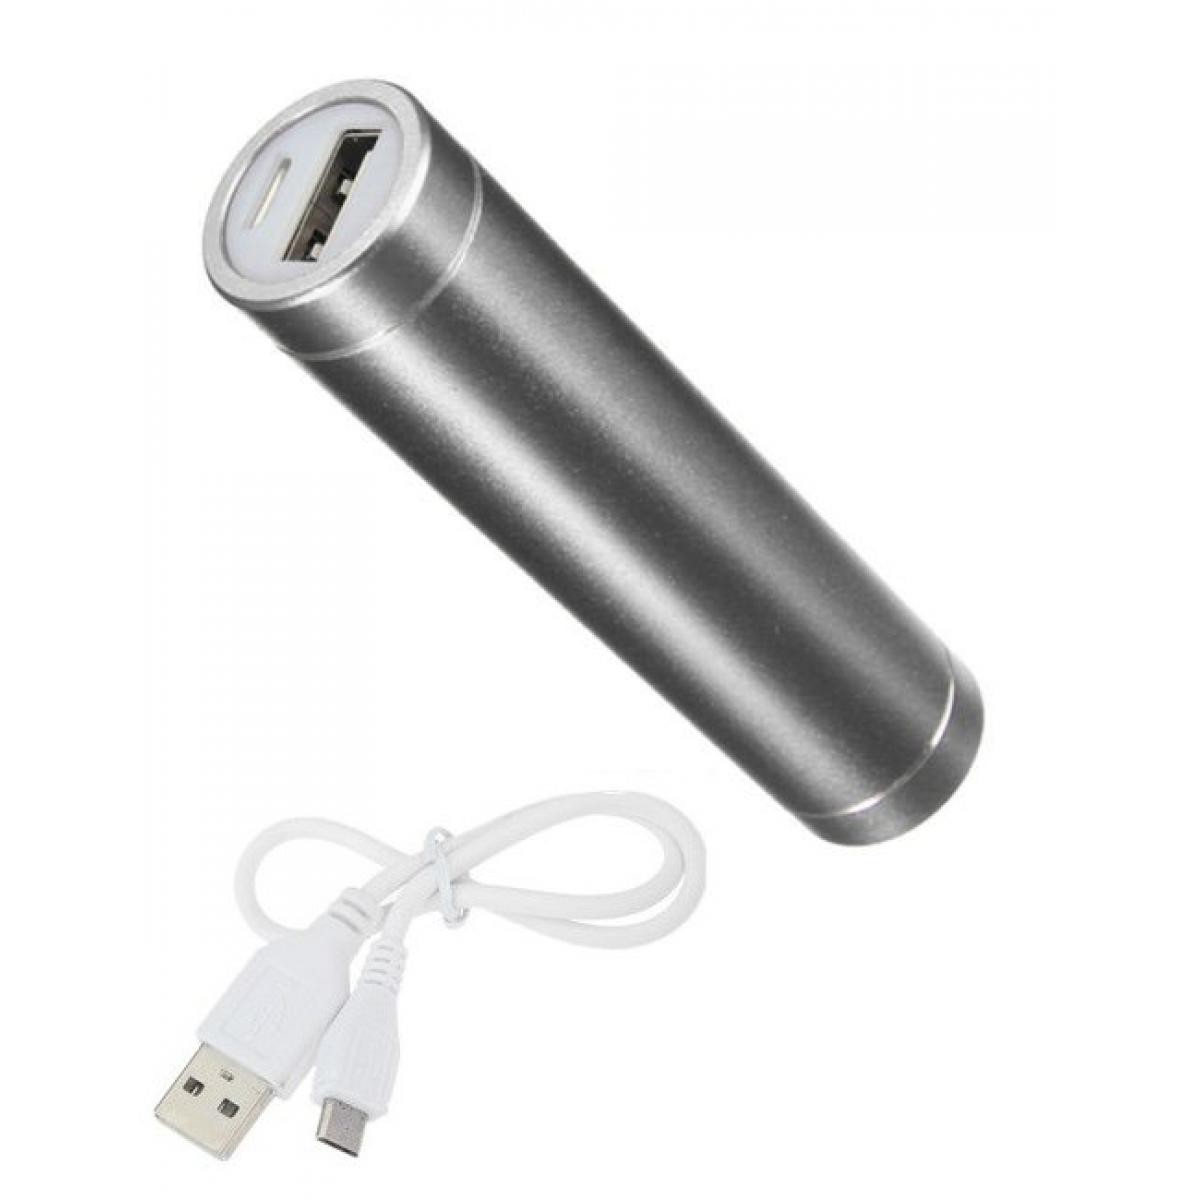 Shot - Batterie Chargeur Externe pour XIAOMI Redmi Note 6A Power Bank 2600mAh avec Cable USB/Mirco USB Secours Telephon (ARGENT) - Chargeur secteur téléphone